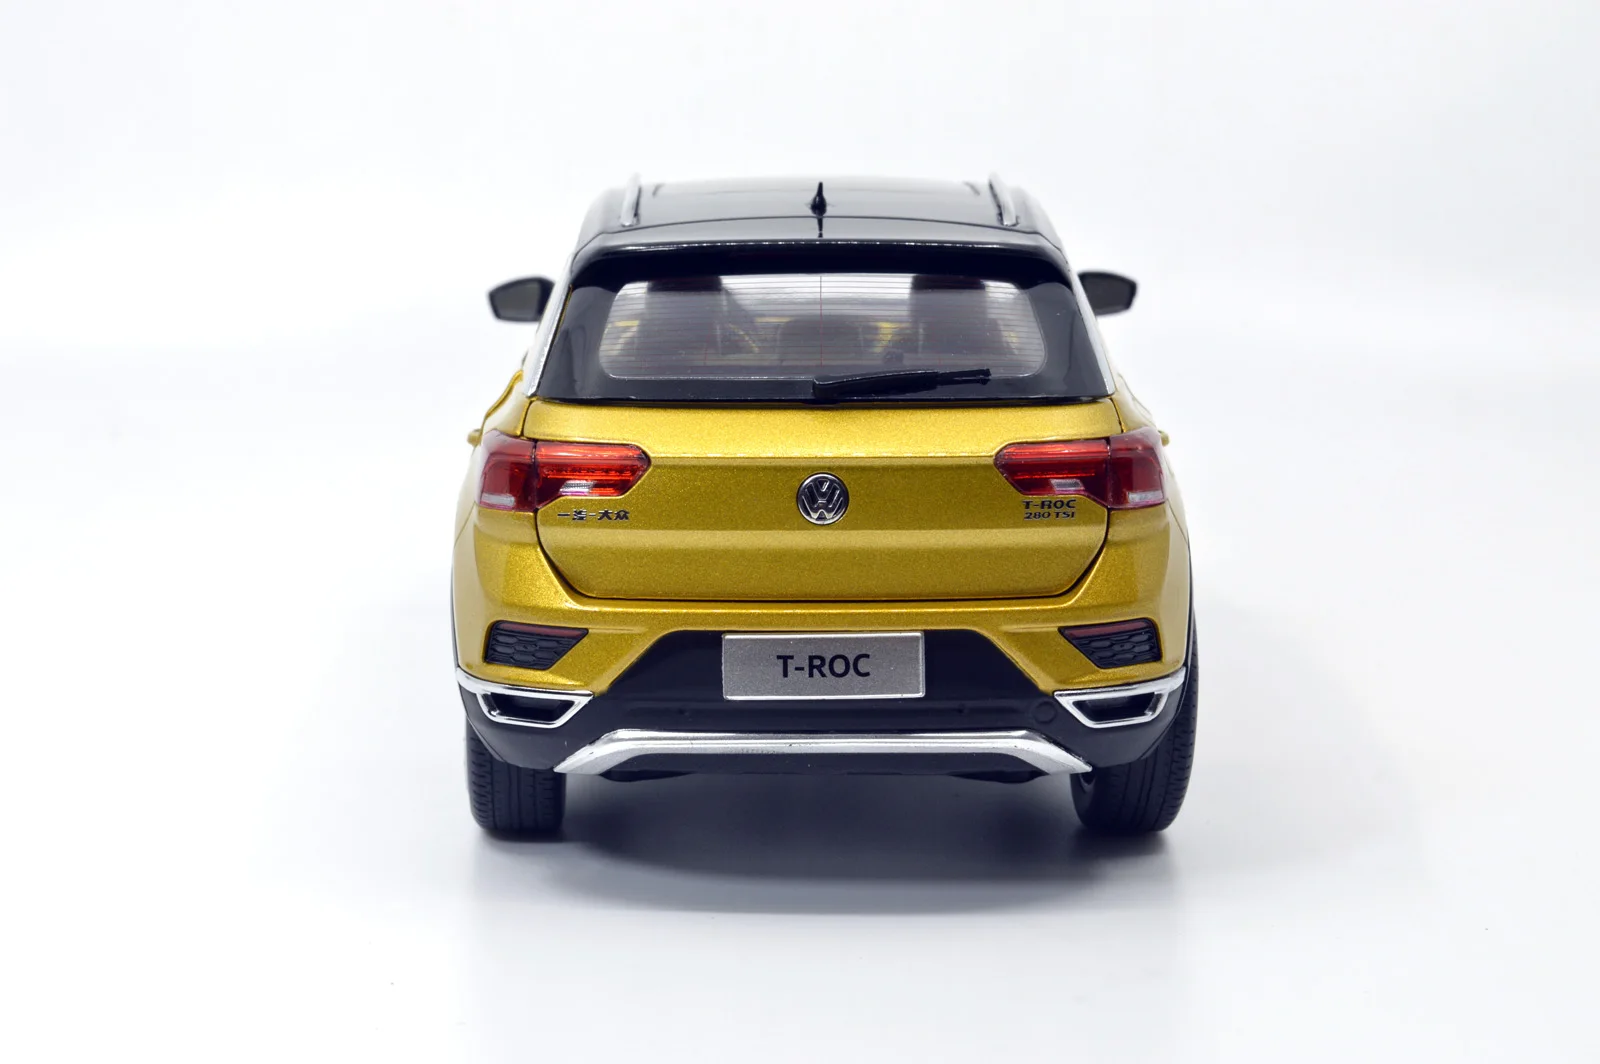 Модель Paudi 1/18 1:18 Масштаб VW Volkswagen T Roc Ограниченная серия Золотой Черный Топ литая под давлением модель автомобиля игрушка модель автомобиля открываются двери